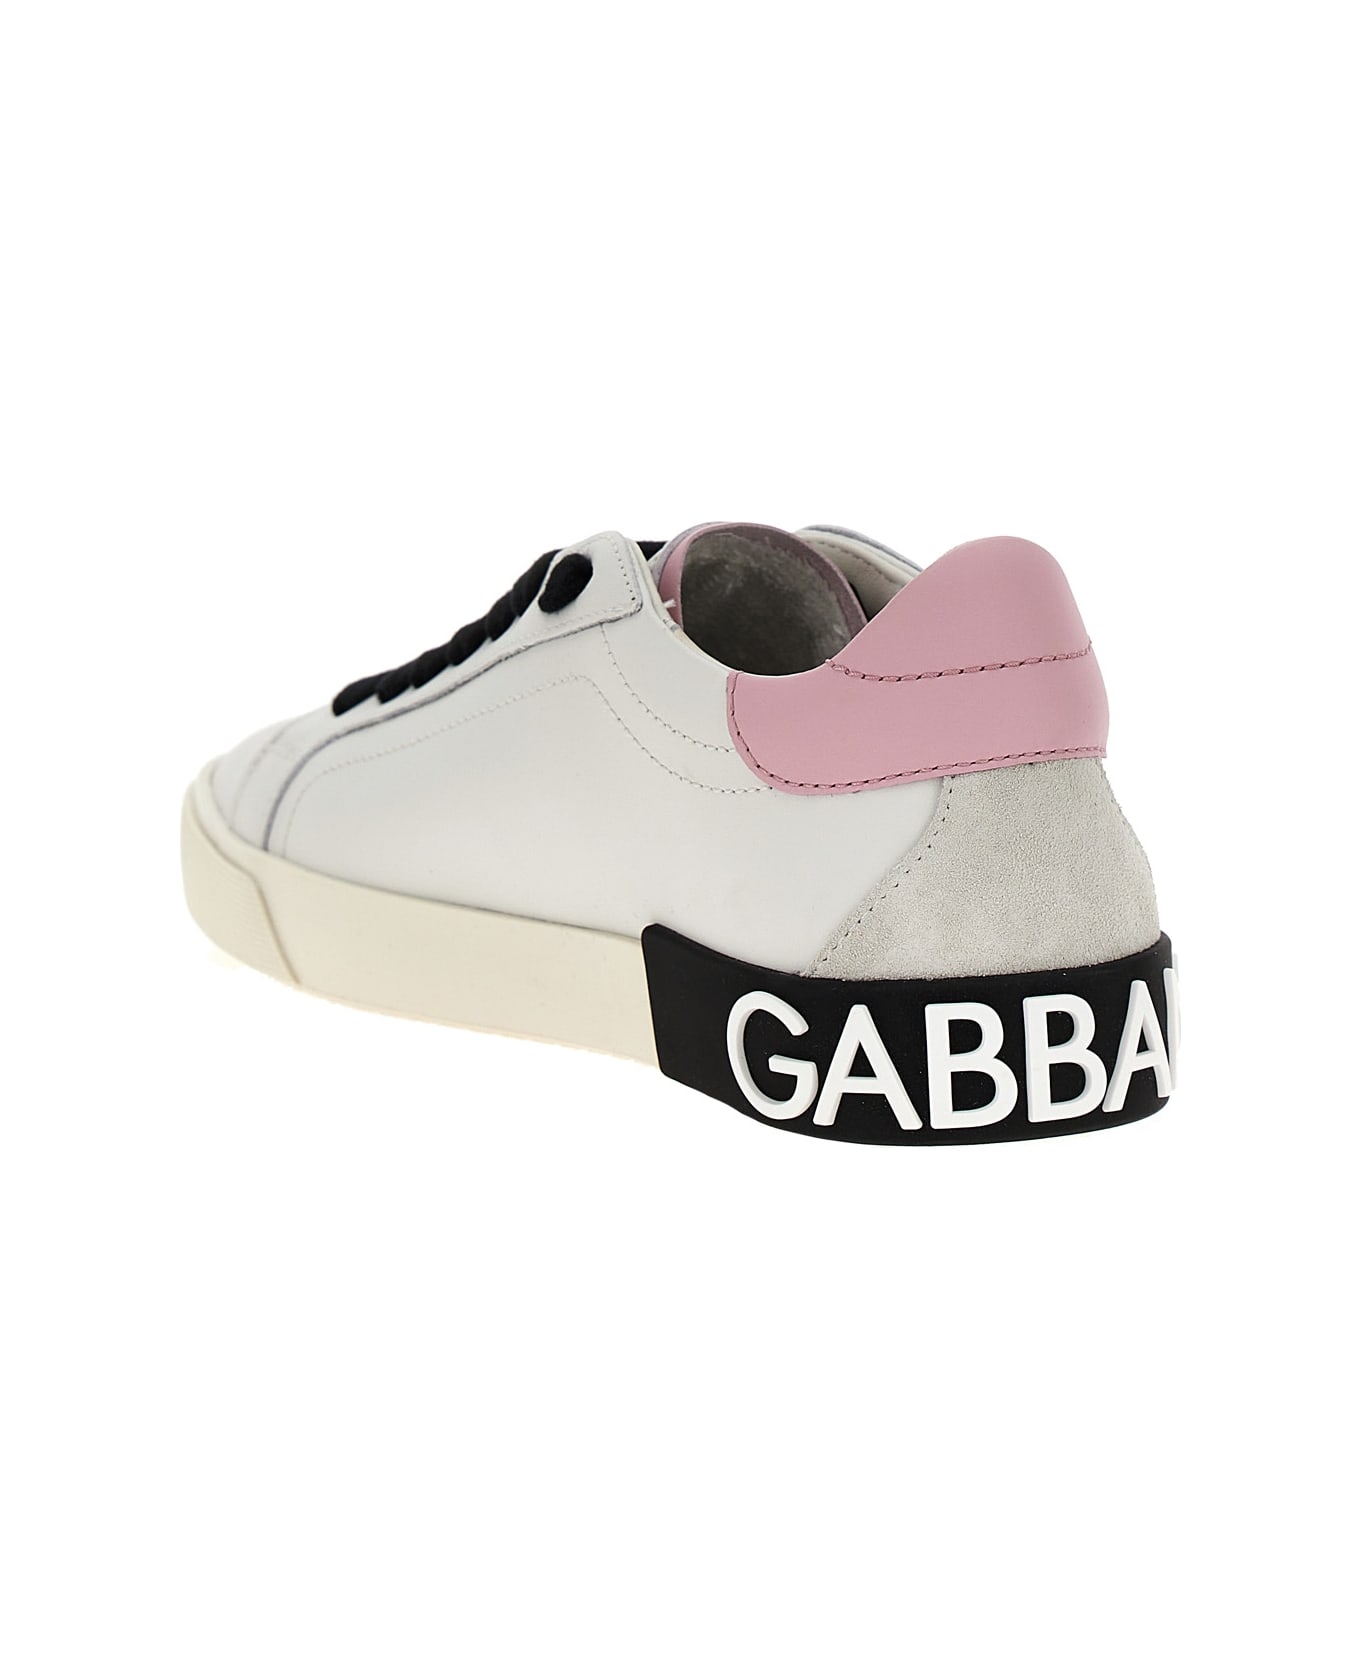 Dolce & Gabbana Portofino Vintage Sneakers - Multicolor